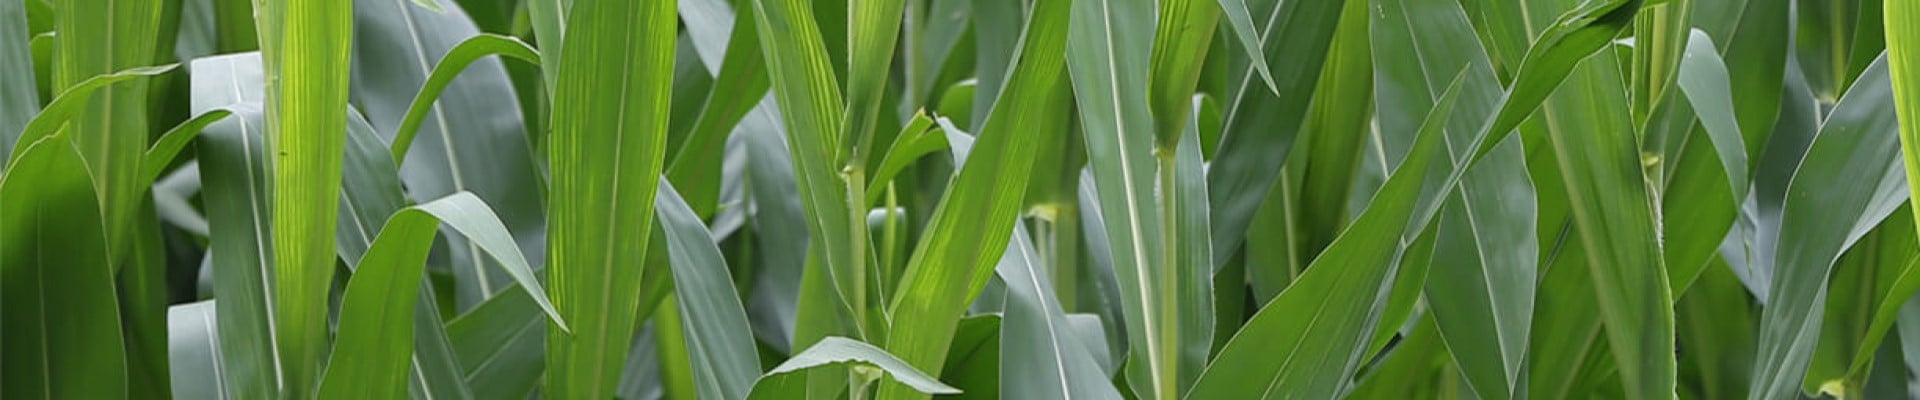 Corn-CTA.jpg